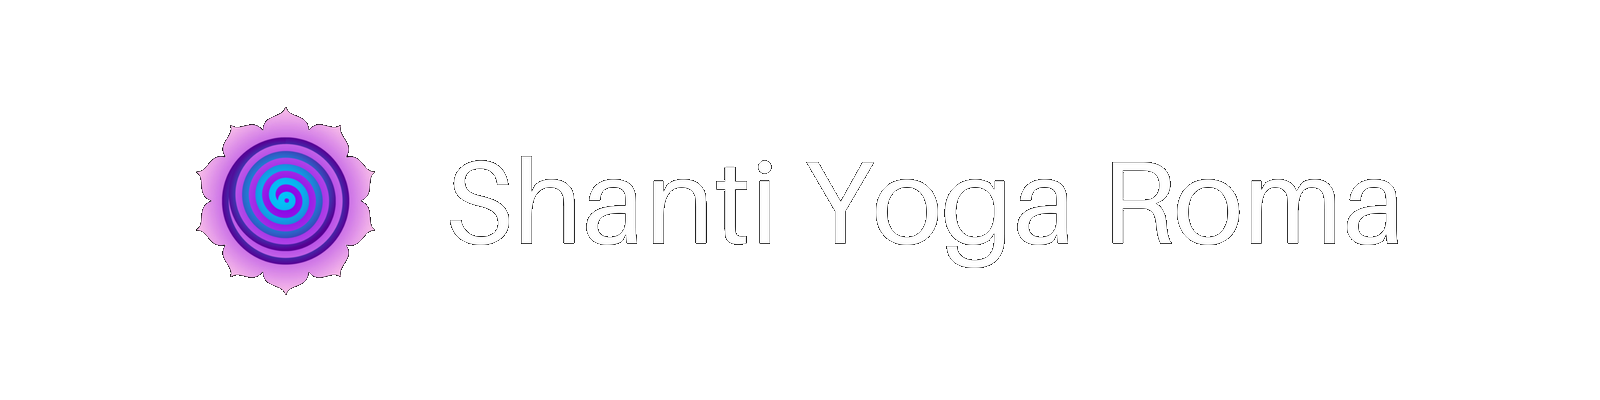 Shanti Yoga Roma